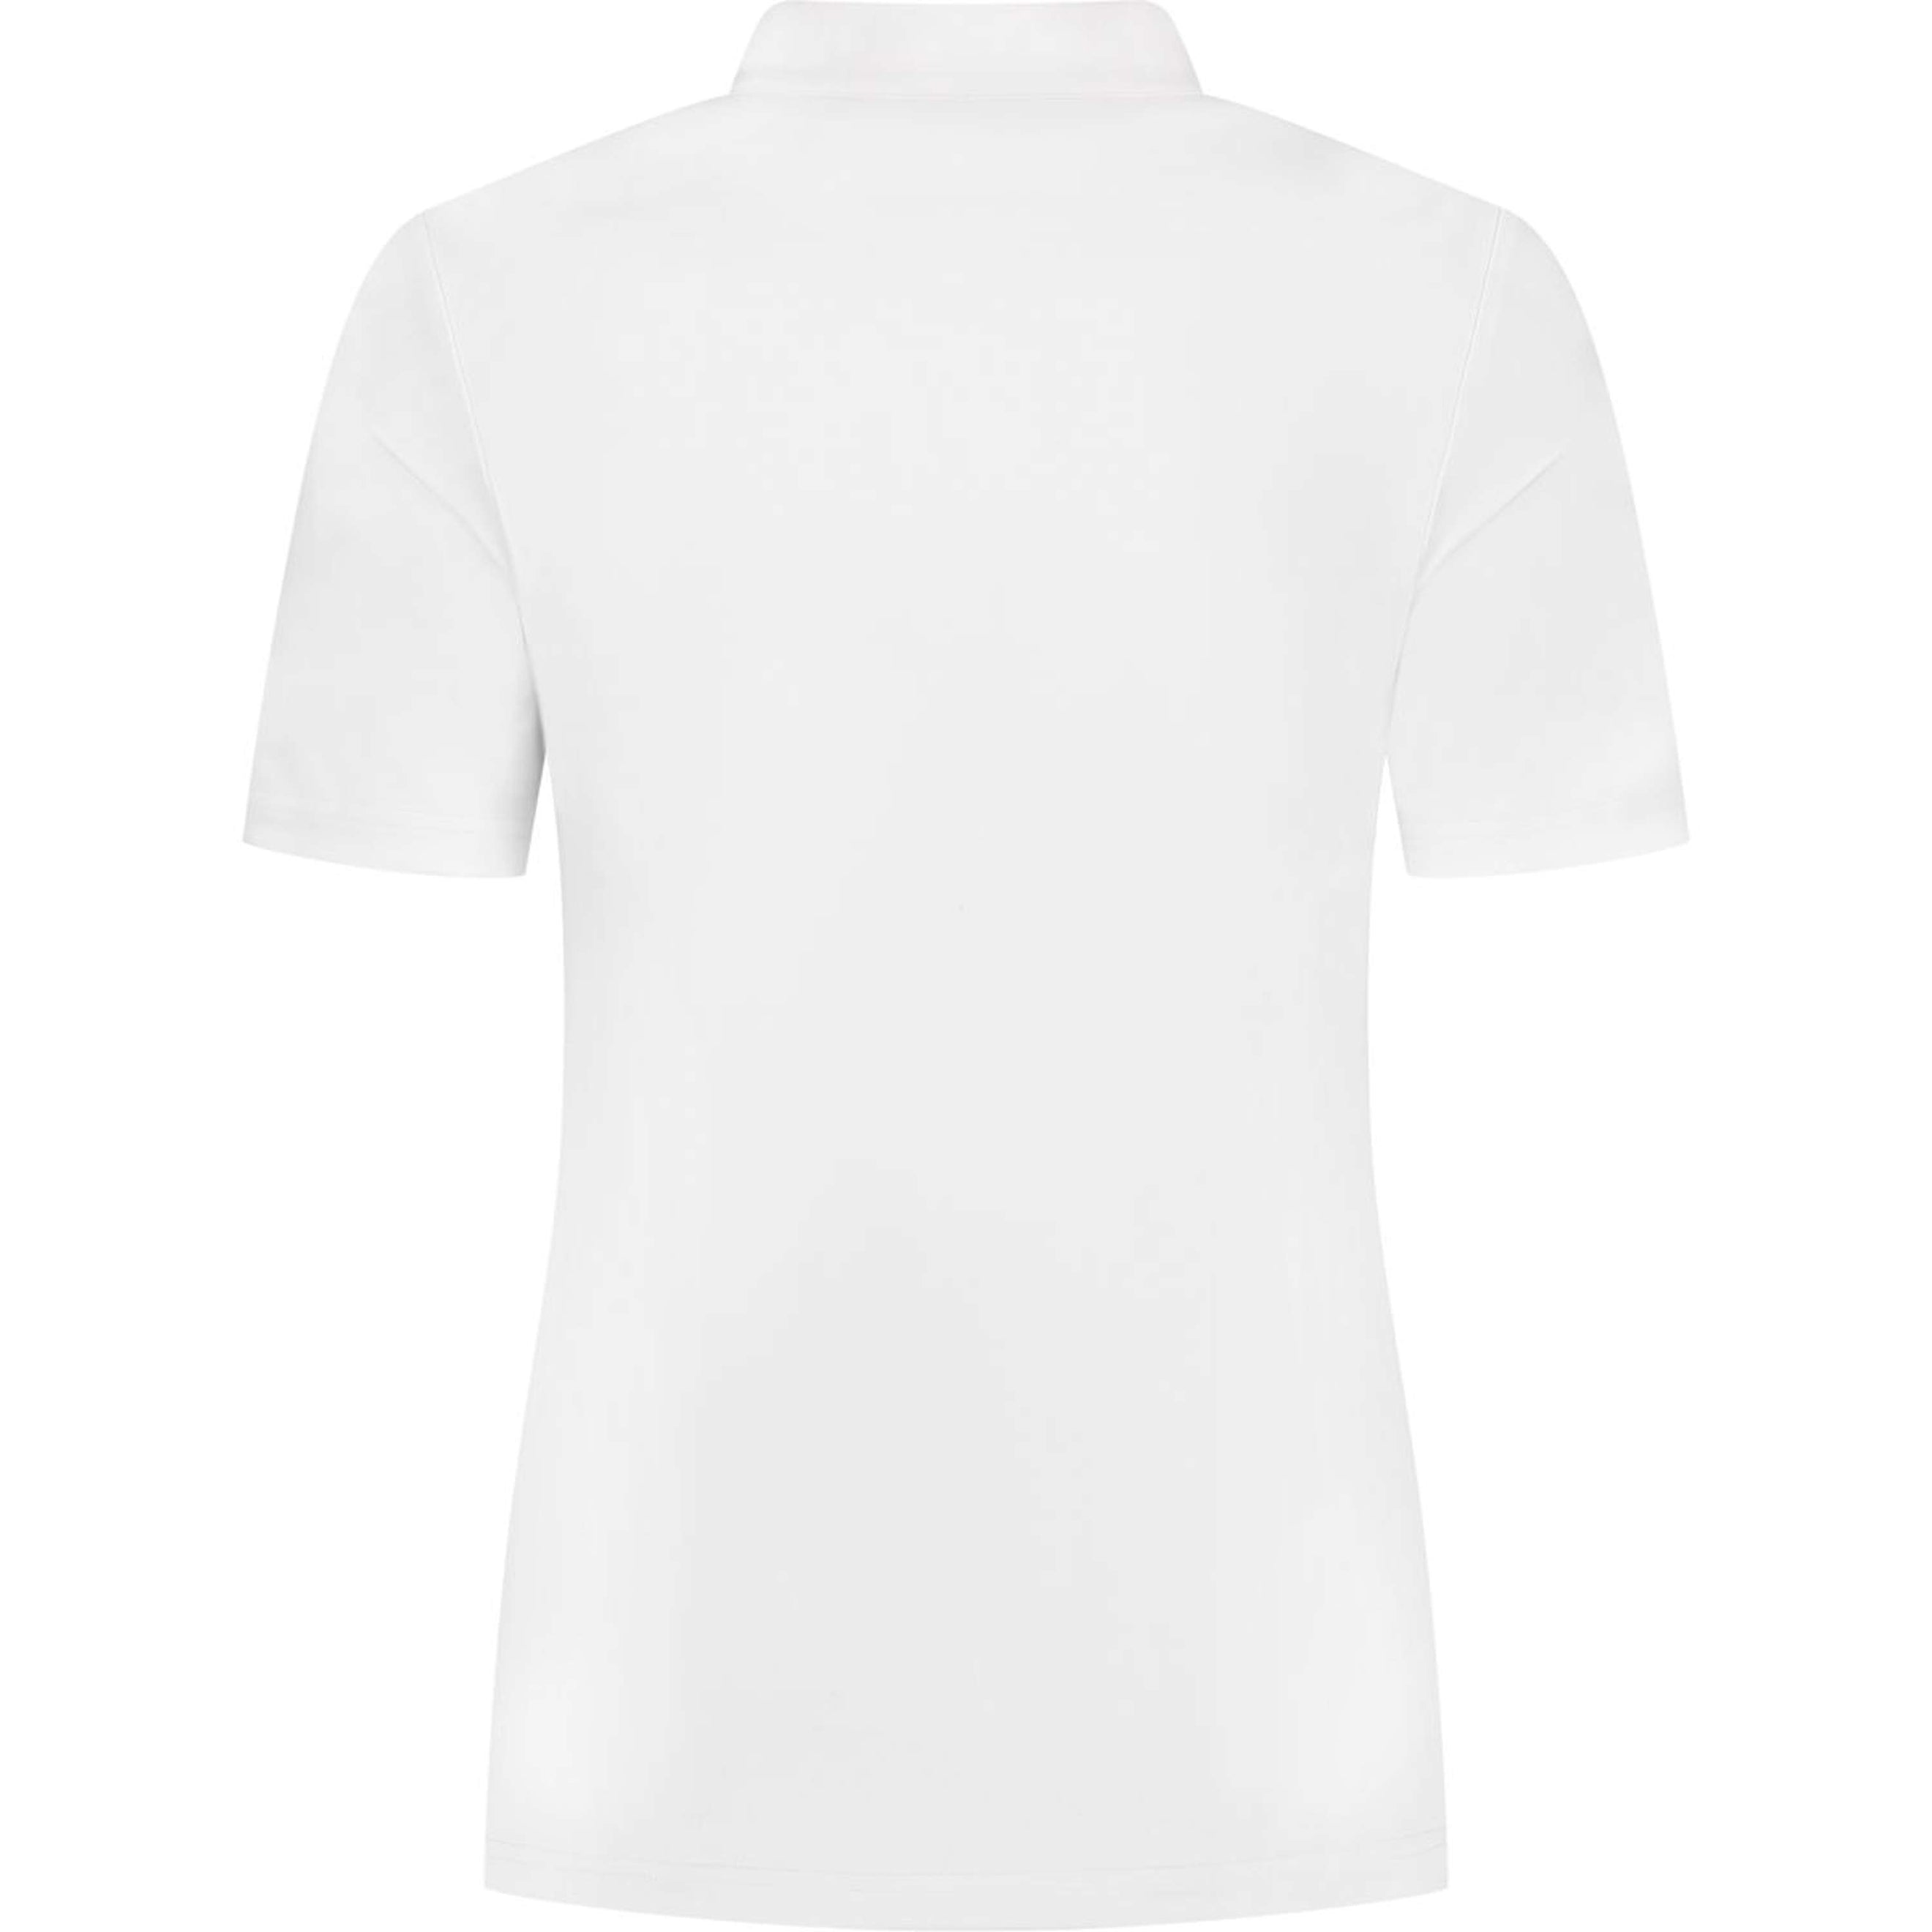 Mrs. Ros T-shirt de Concours Jacquard Manches Courtes Blanc